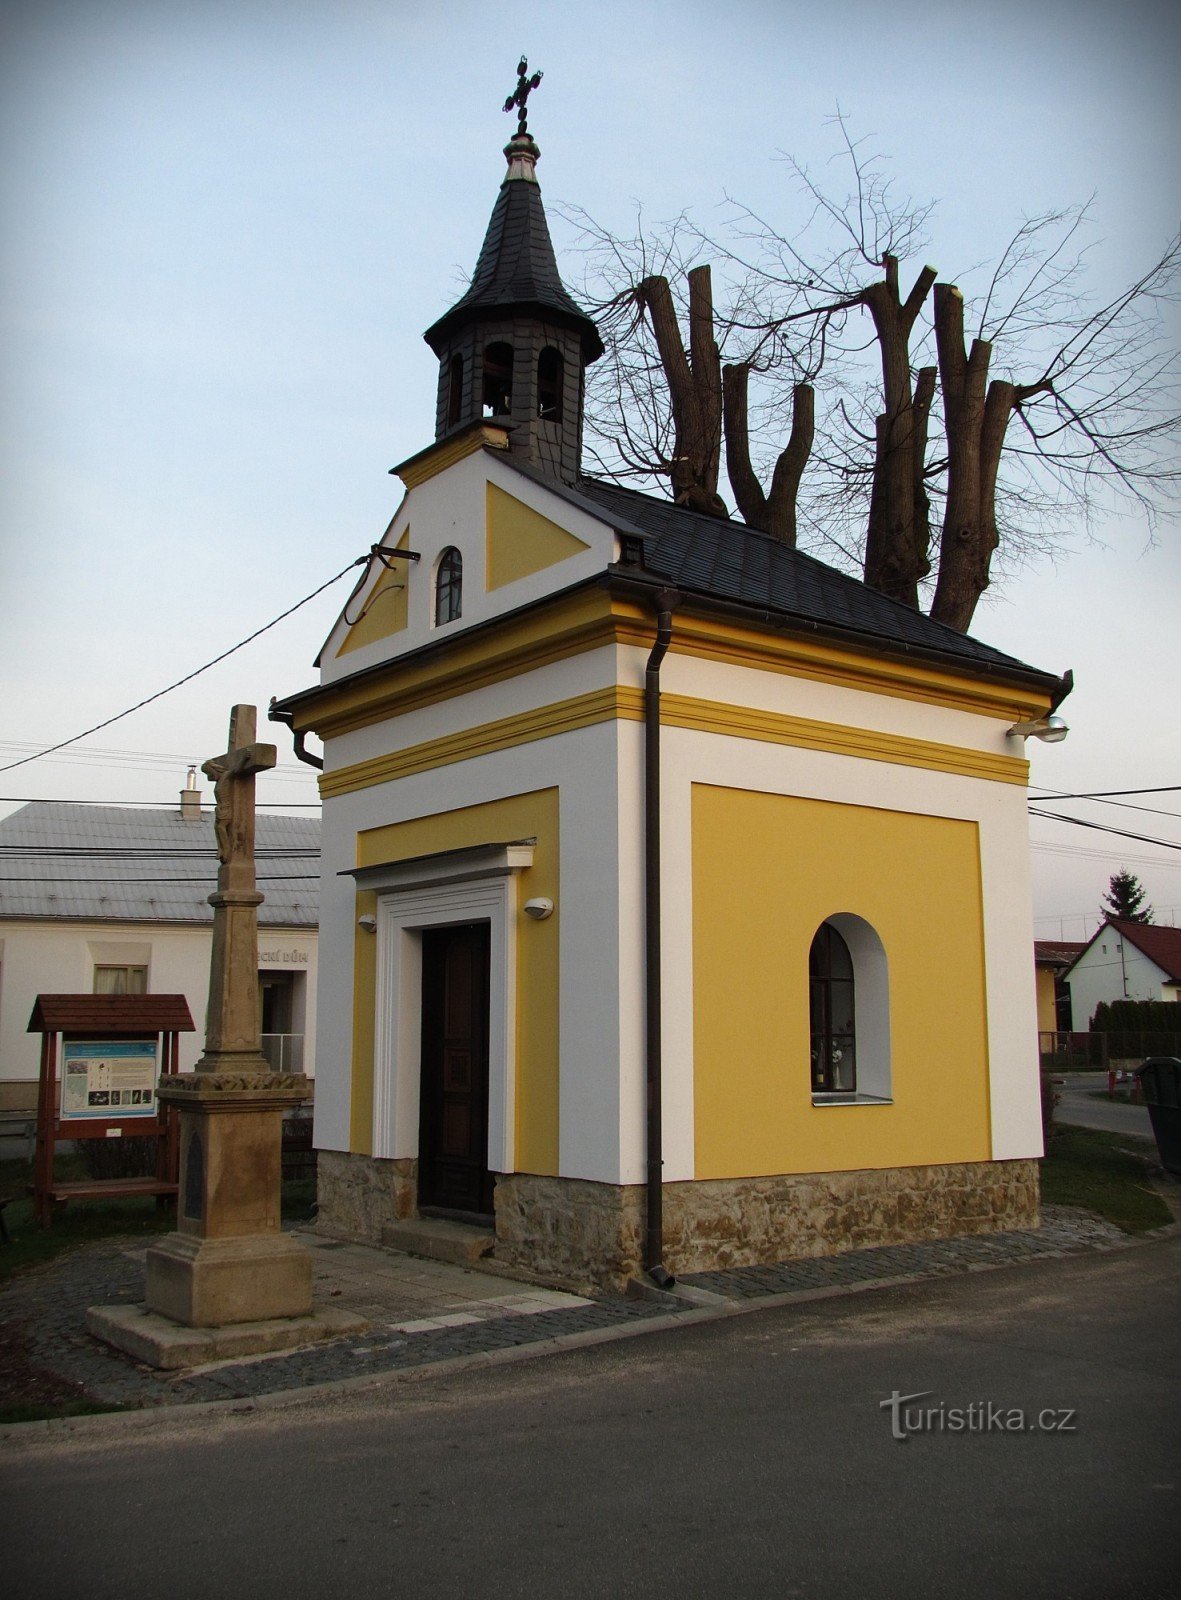 Lukoveček - điểm tham quan và hấp dẫn của ngôi làng